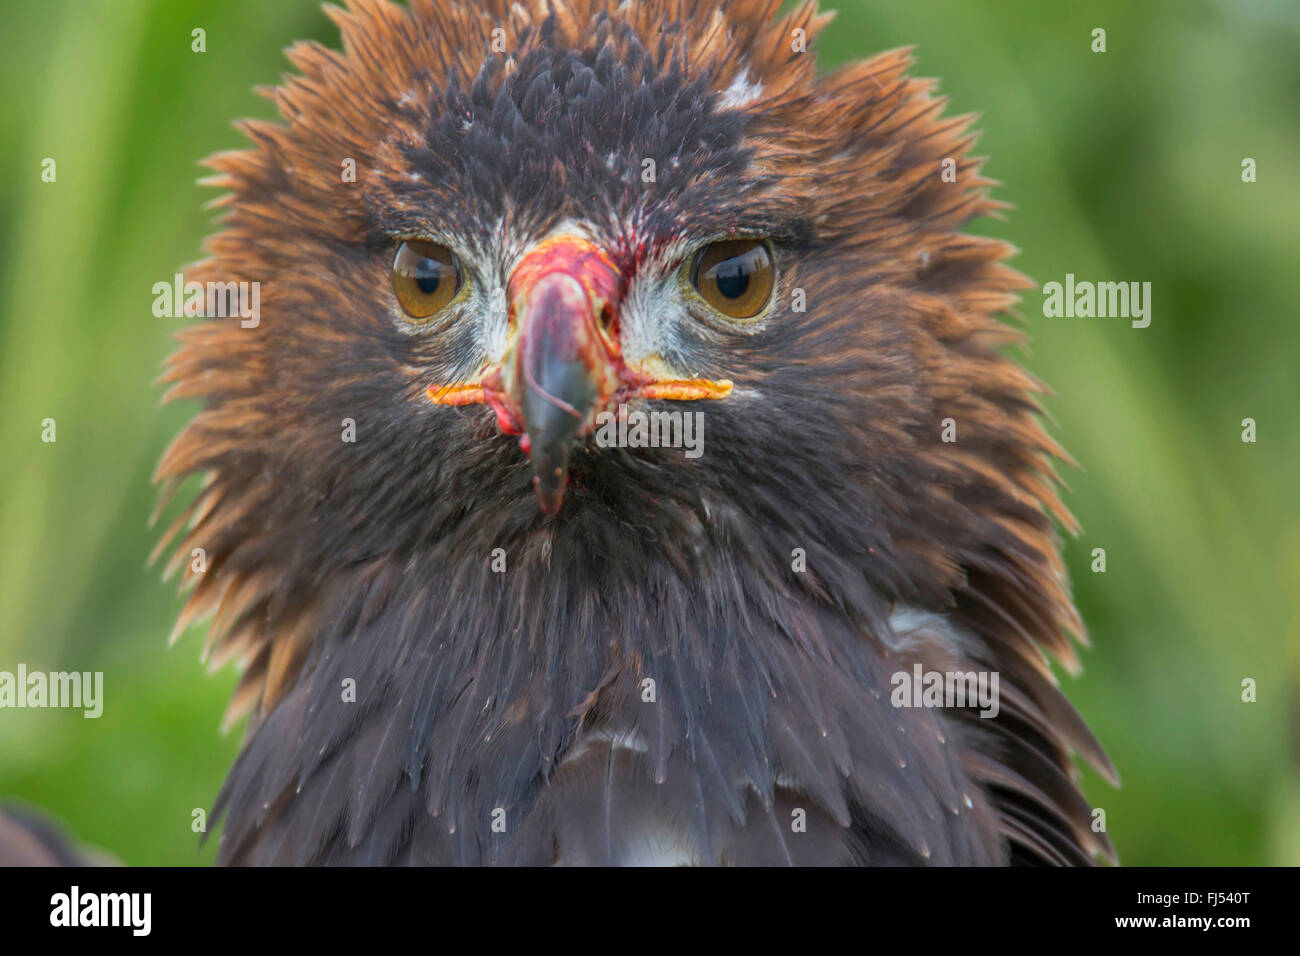 Águila real (Aquila chrysaetos), postura amenazadora, tras la exitosa cacería Foto de stock